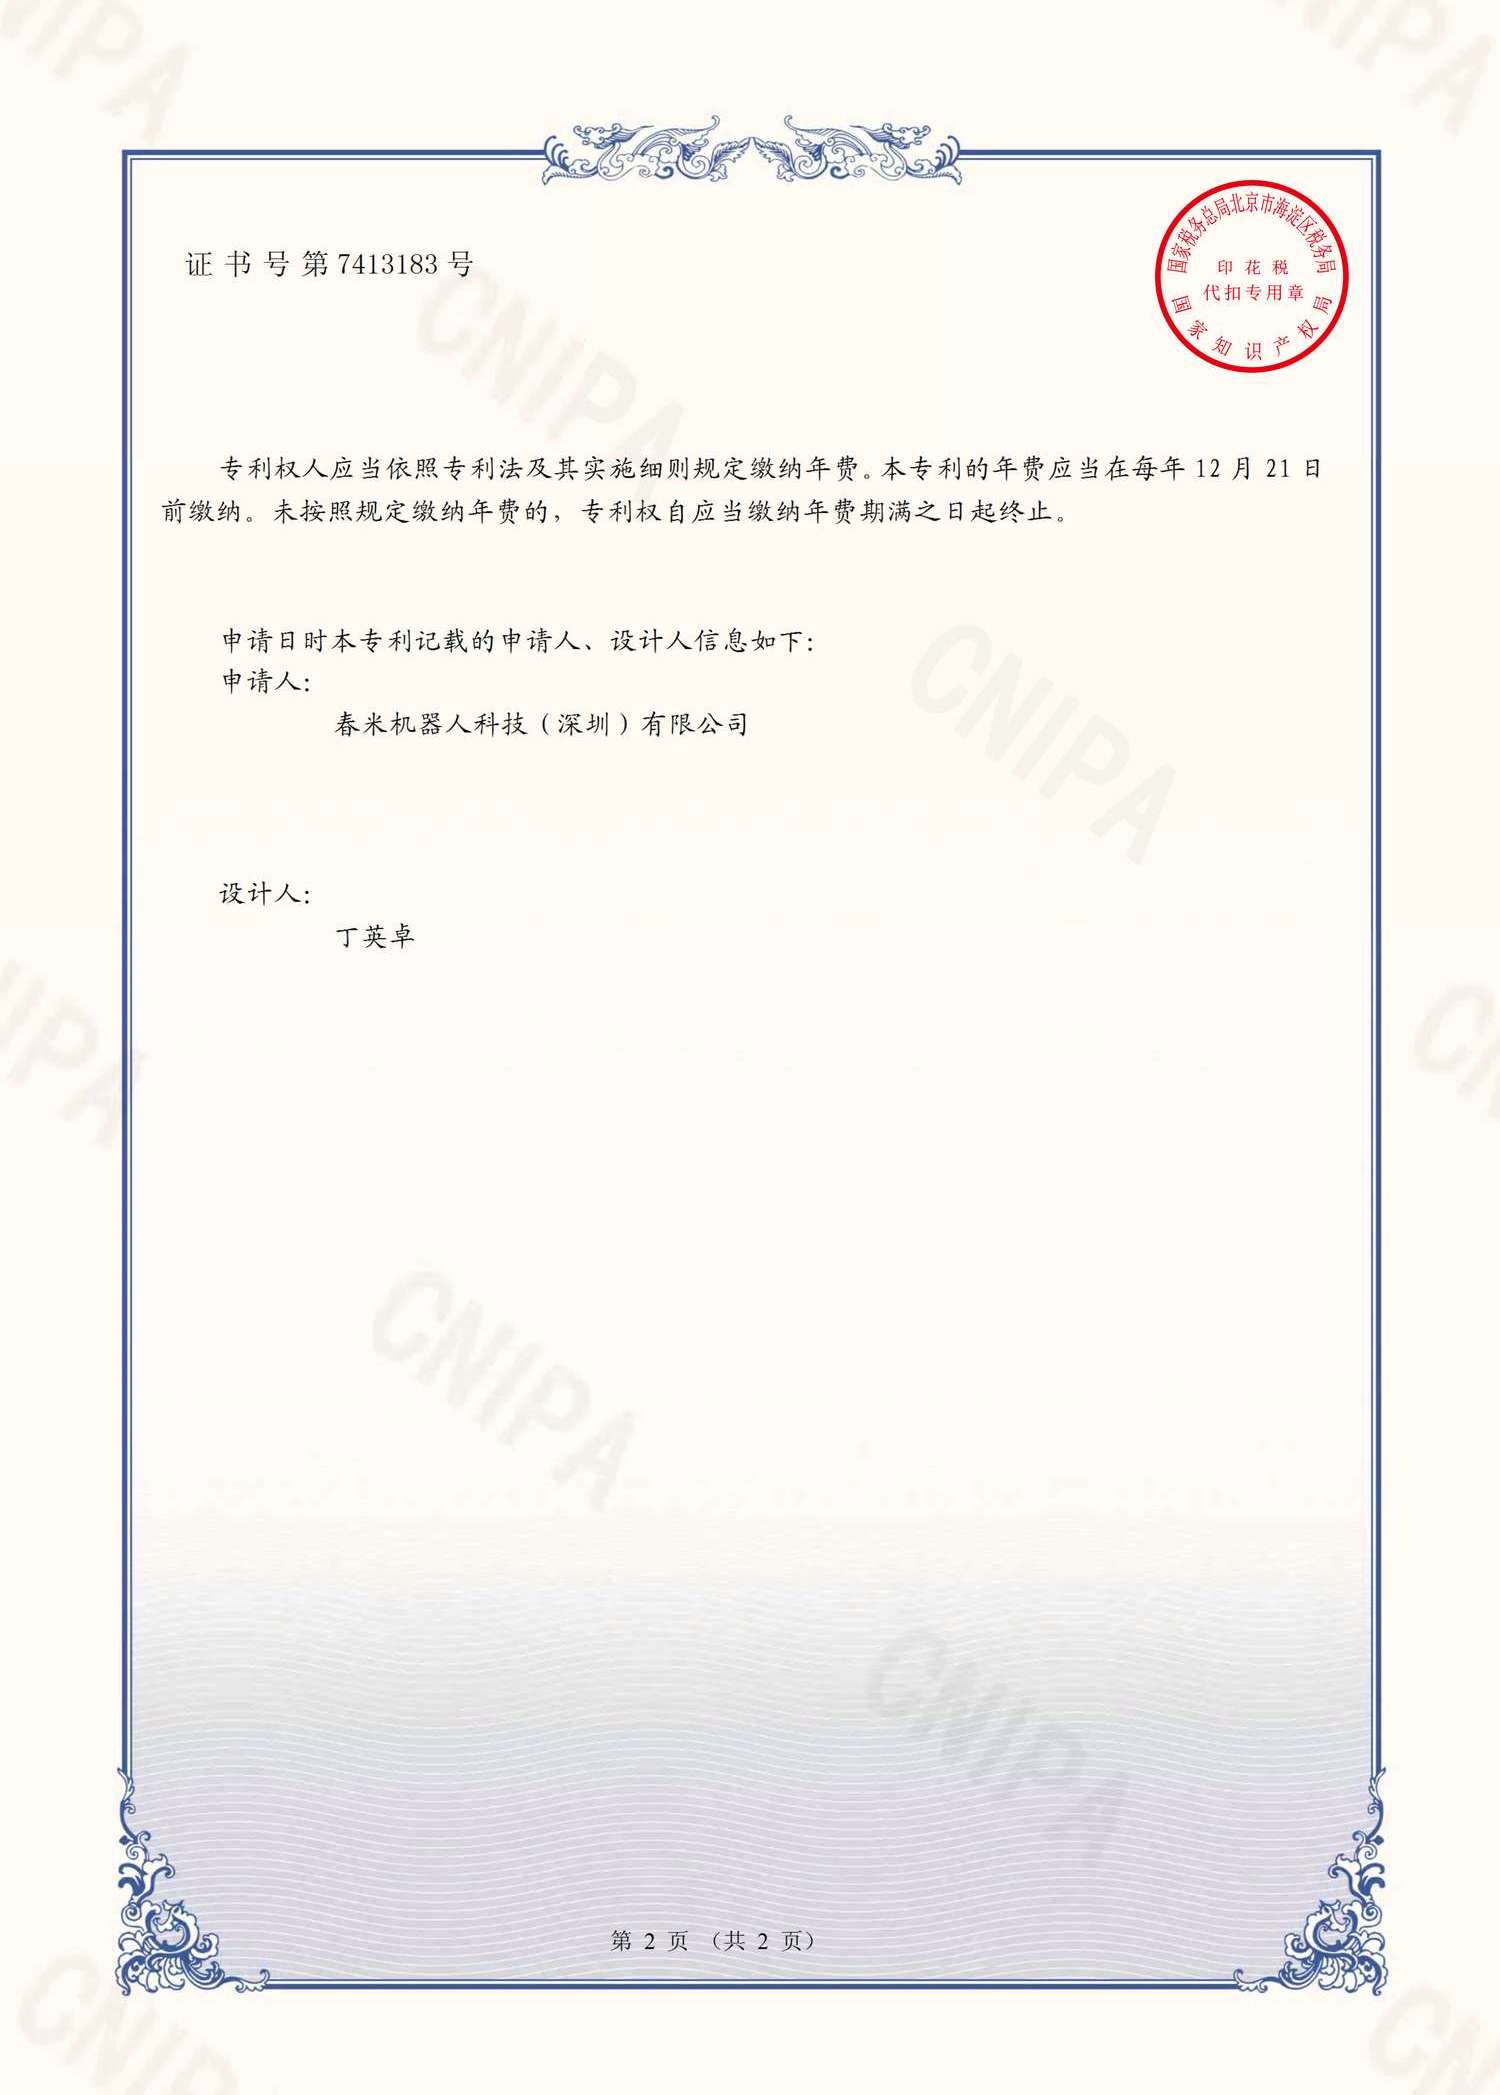 旋转式抚触器-专利证书-CX321-0207 2021308452667 证书 春米机器人(签章)_2.png